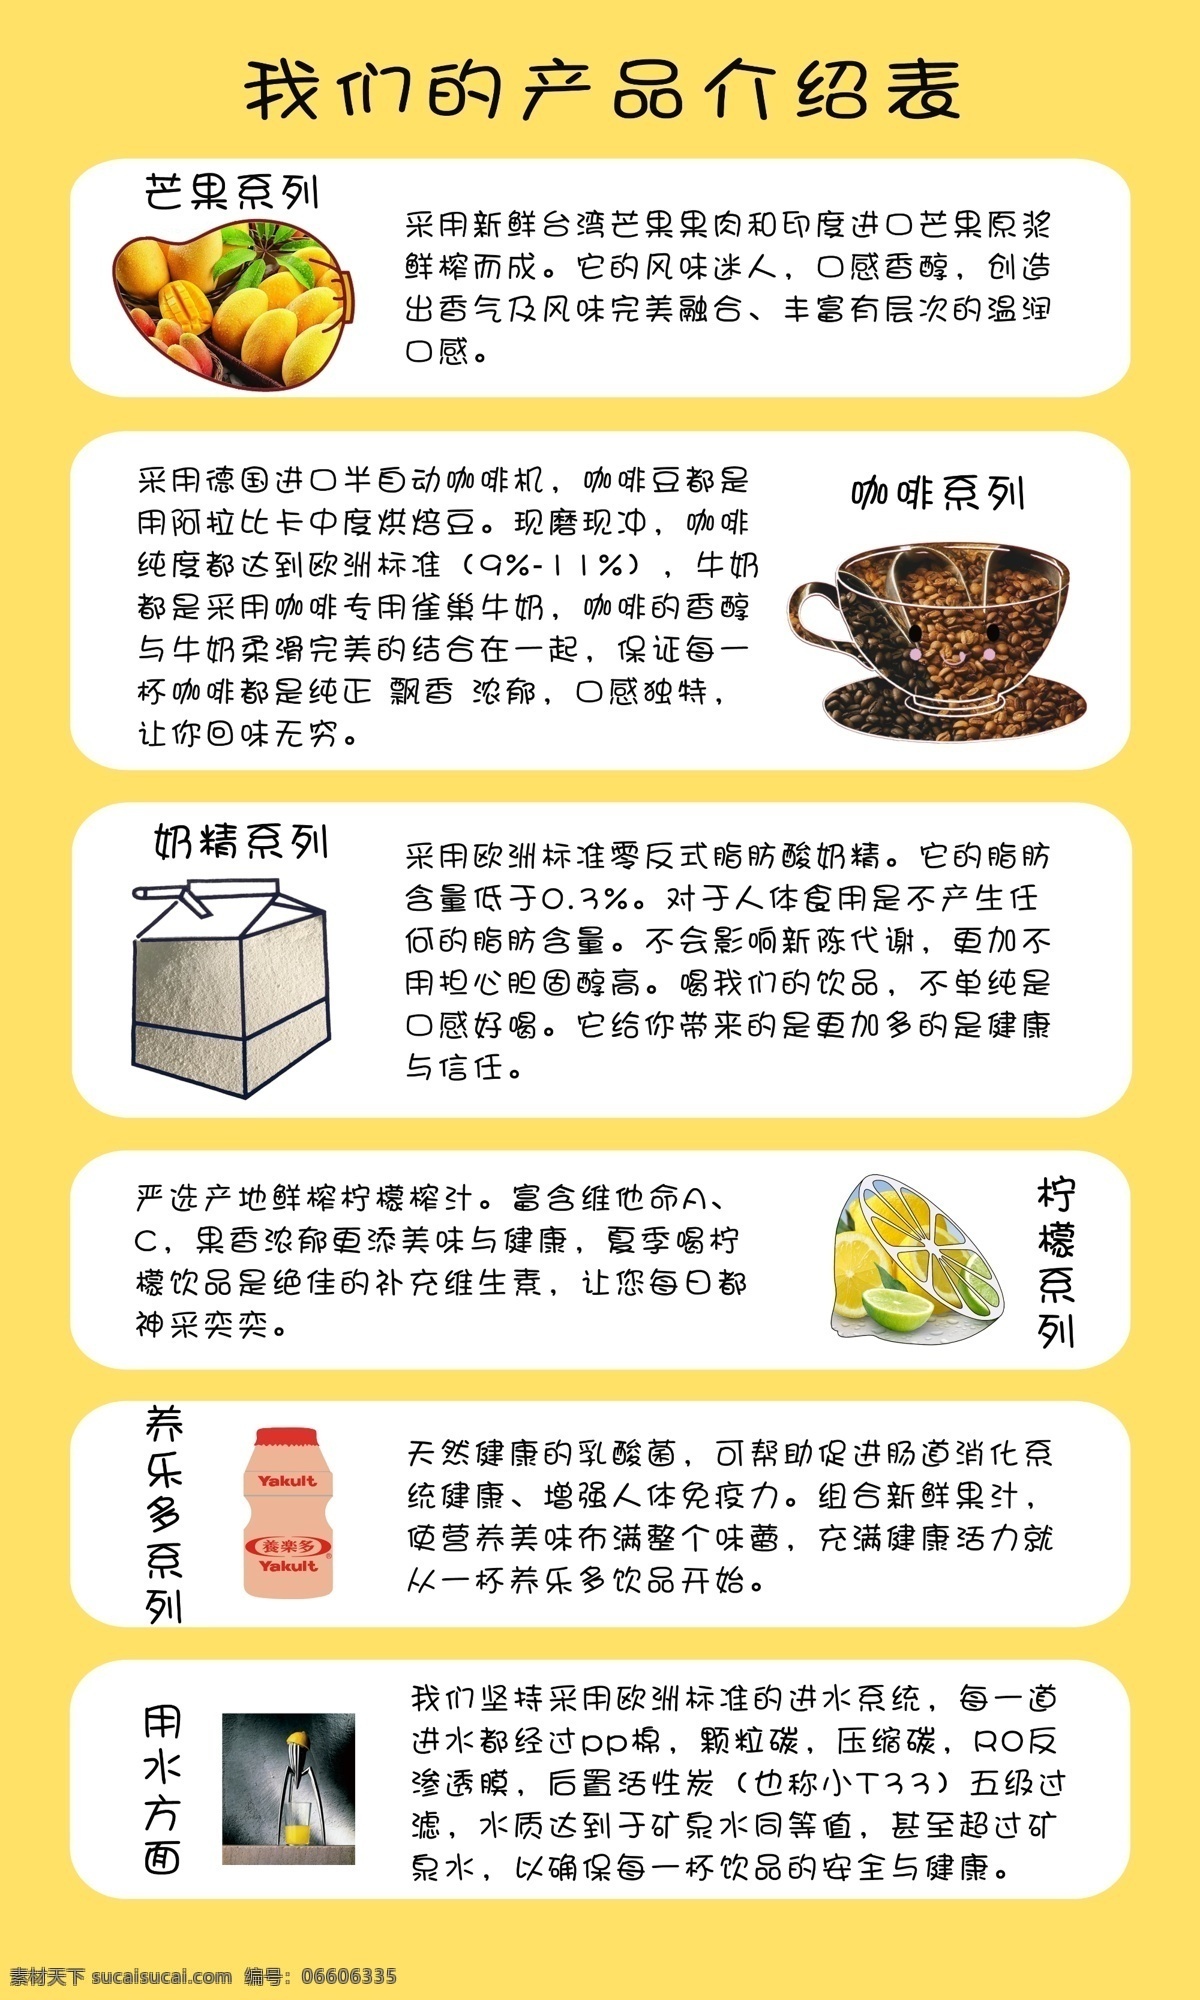 奶茶产品介绍 分图层 图片加内容 很详细 白色